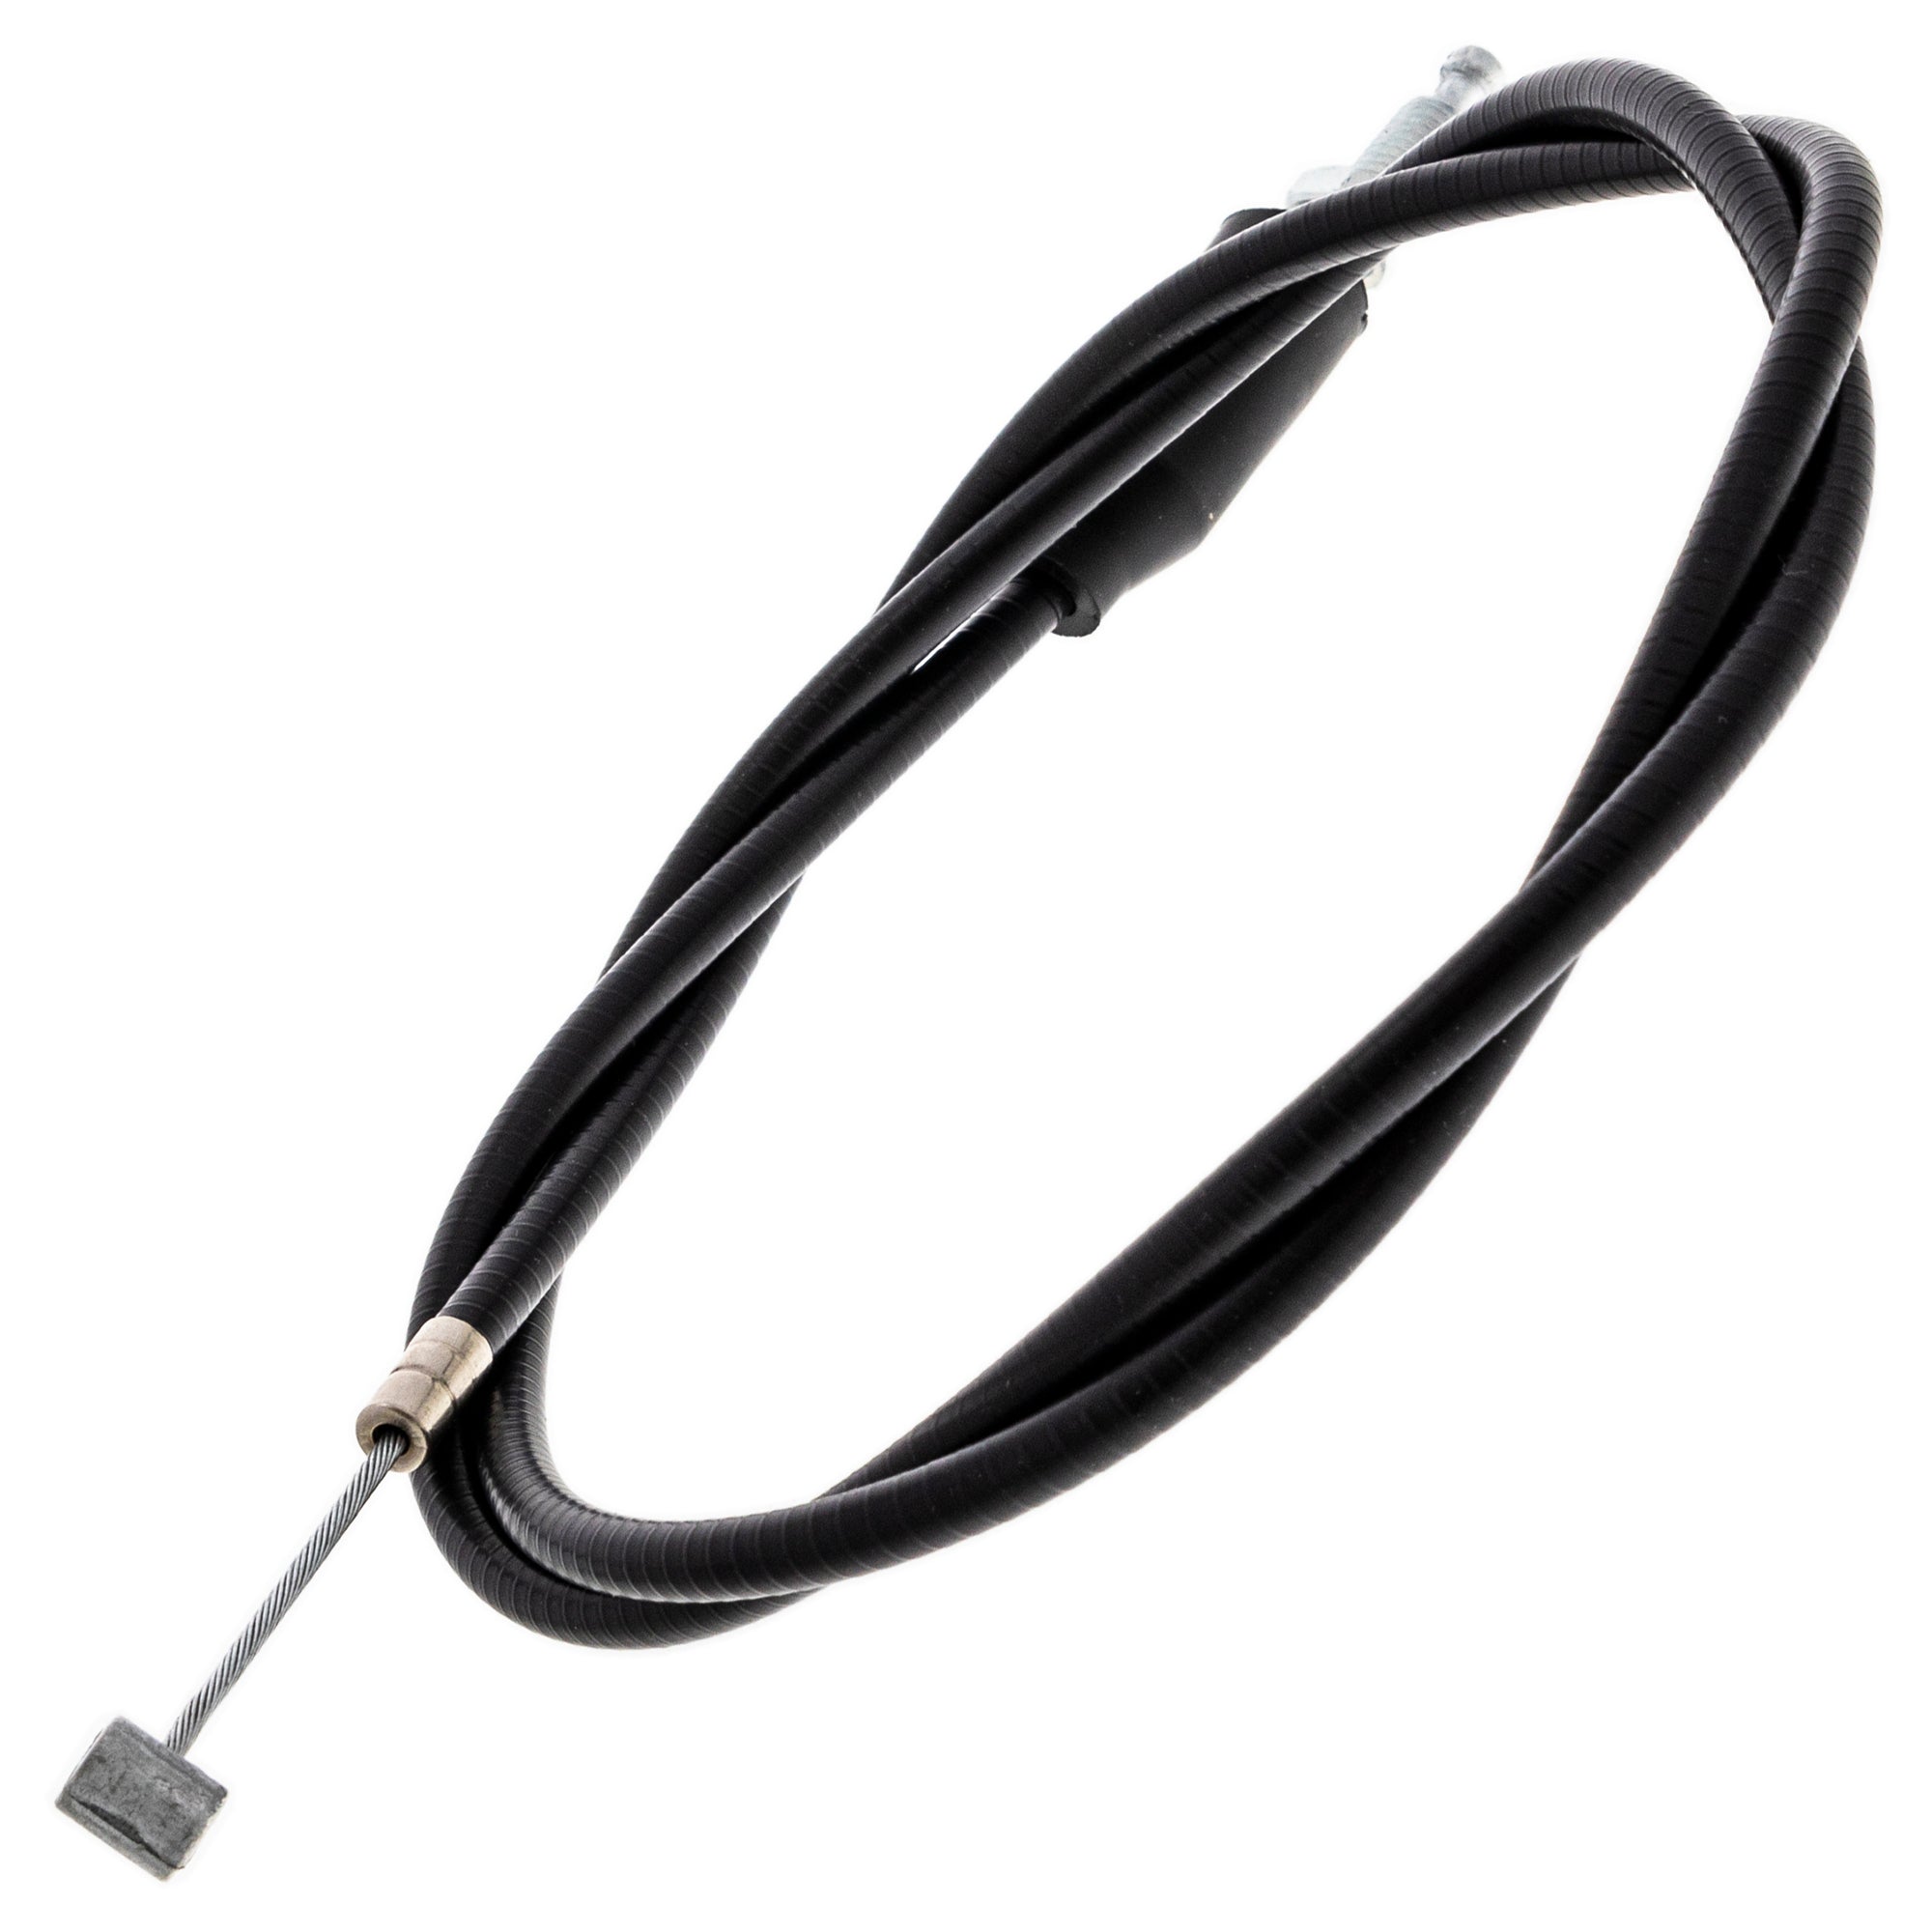 Clutch Cable for Suzuki RV90 TC125 TS125 58200-07711 58200-28000